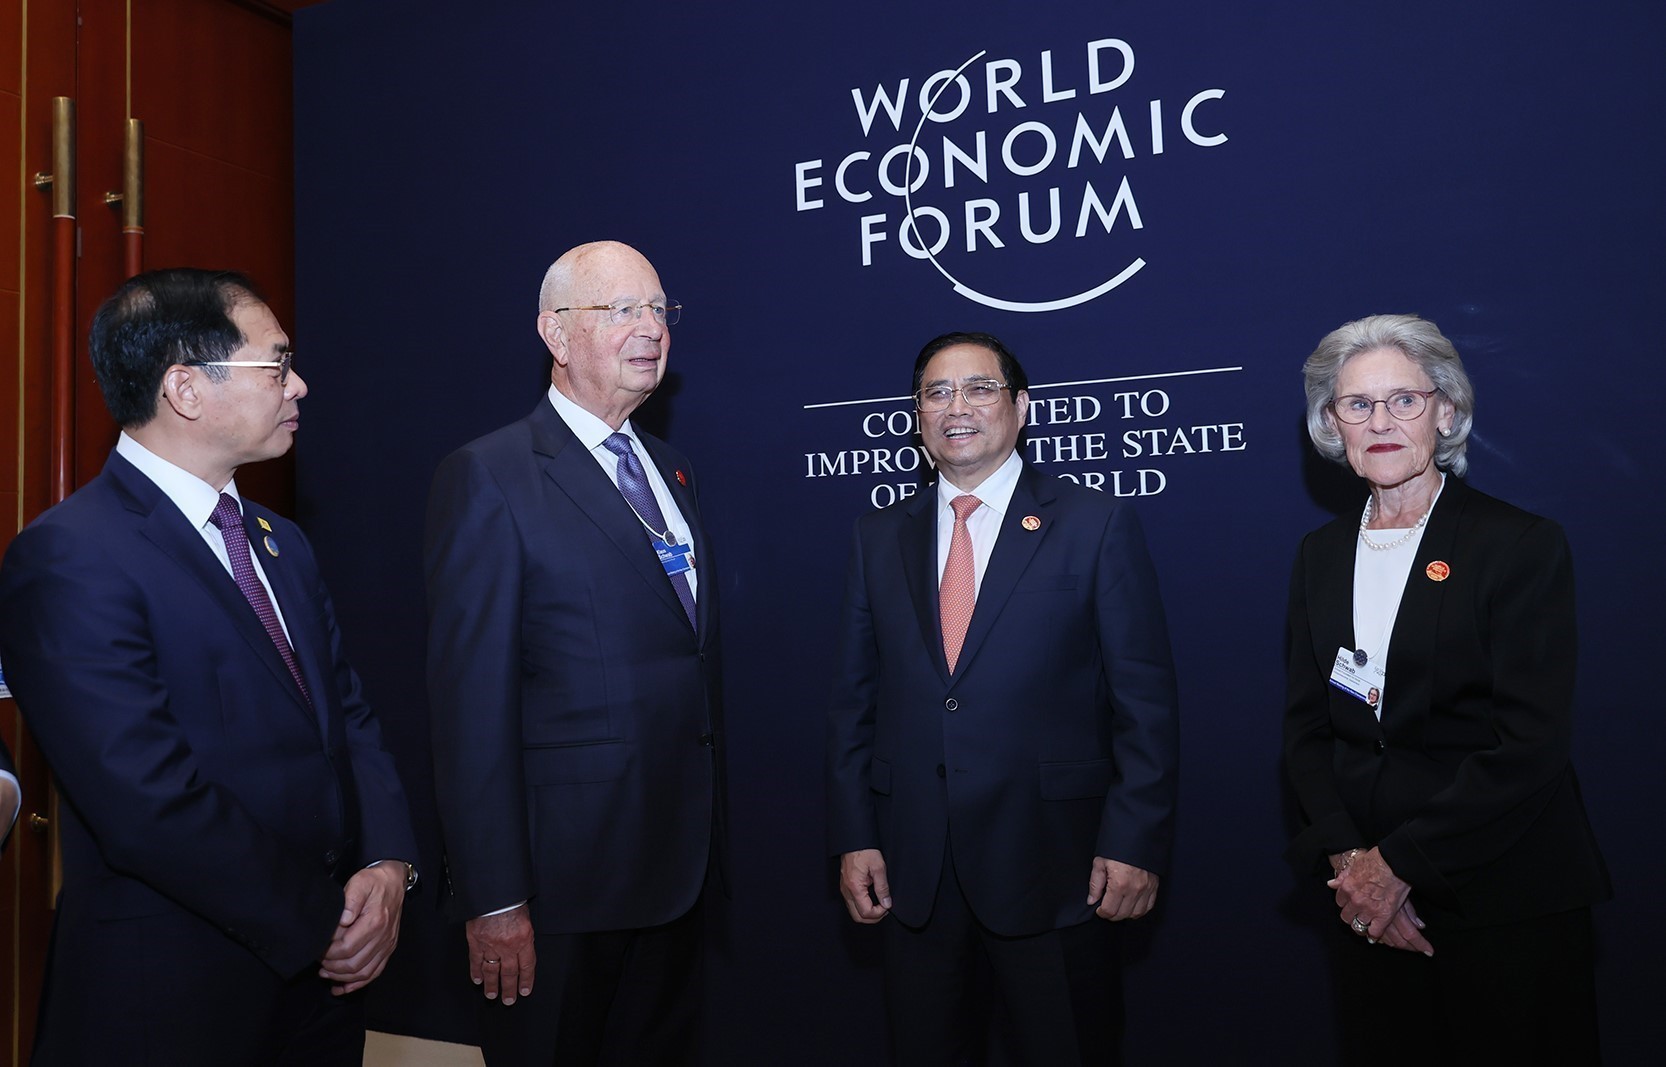 Thủ tướng nhấn mạnh Việt Nam tiếp tục kiên định mục tiêu ổn định kinh tế vĩ mô và thúc đẩy tăng trưởng; đề nghị WEF tiếp tục đồng hành, hỗ trợ kết nối với các doanh nghiệp thành viên, giúp Việt Nam thu hút đầu tư chất lượng cao.